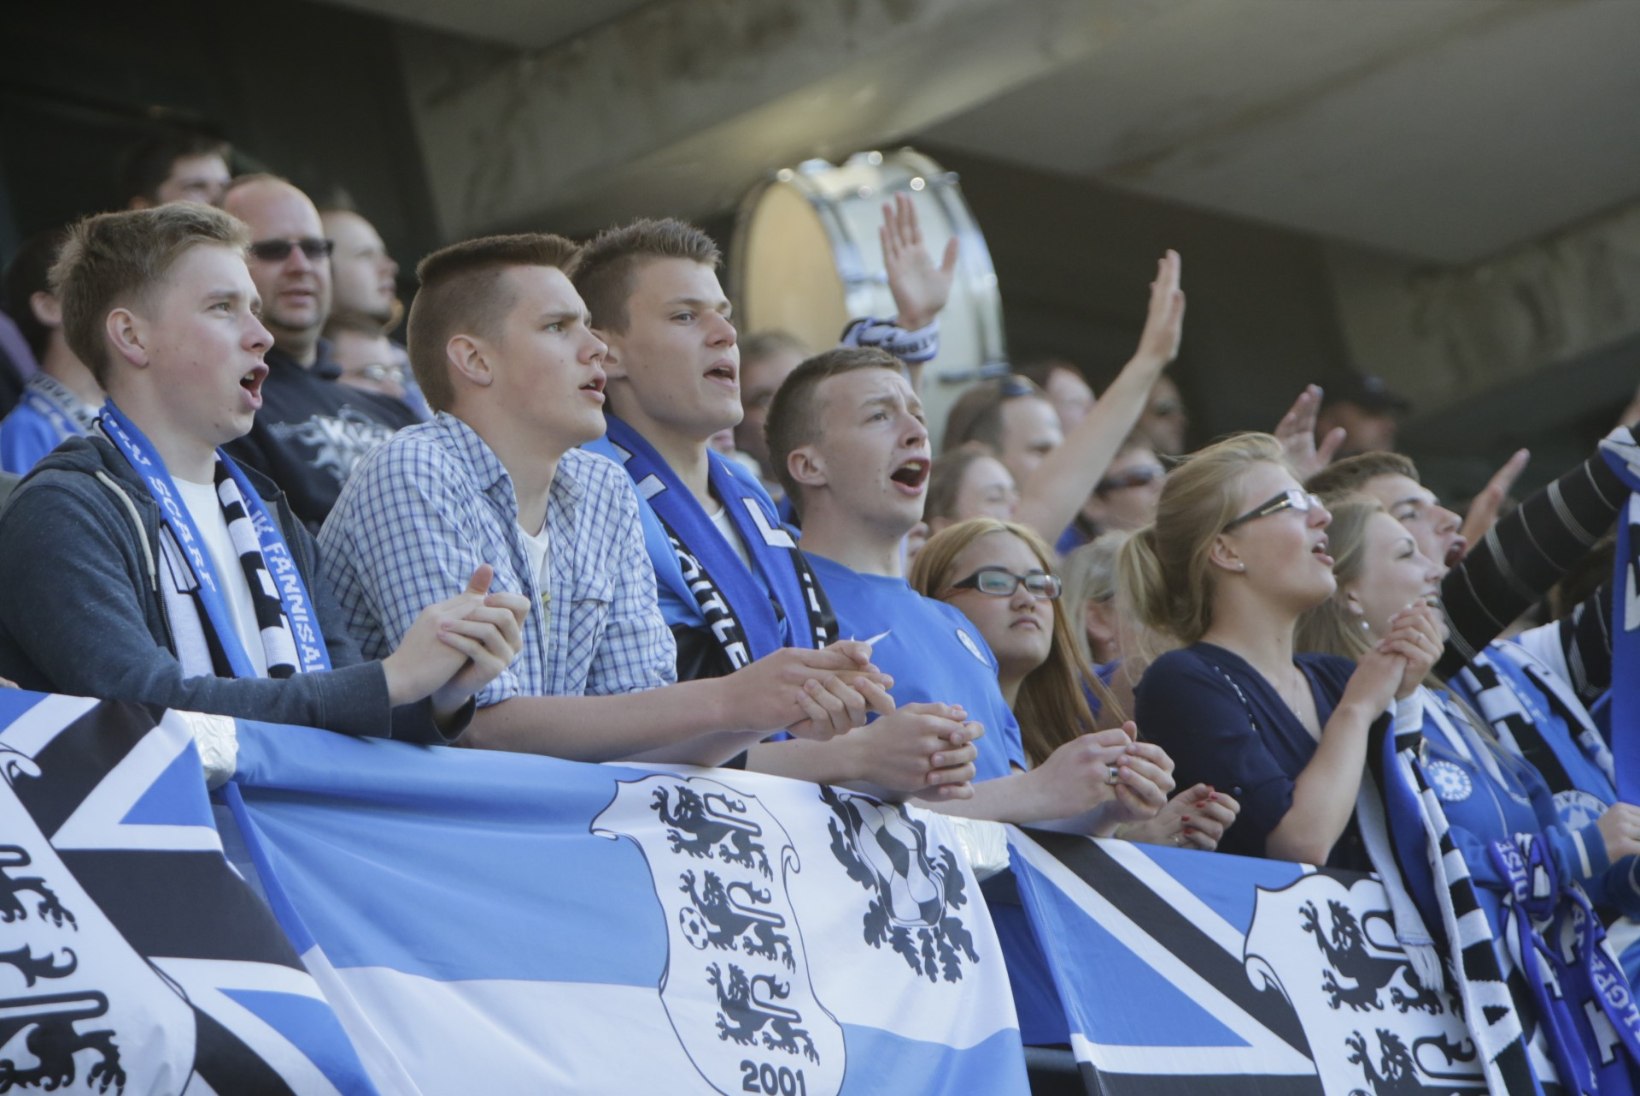 FOTOD: Eesti jalgpallikoondis ei suutnud Operi lahkumismängus võitu võtta